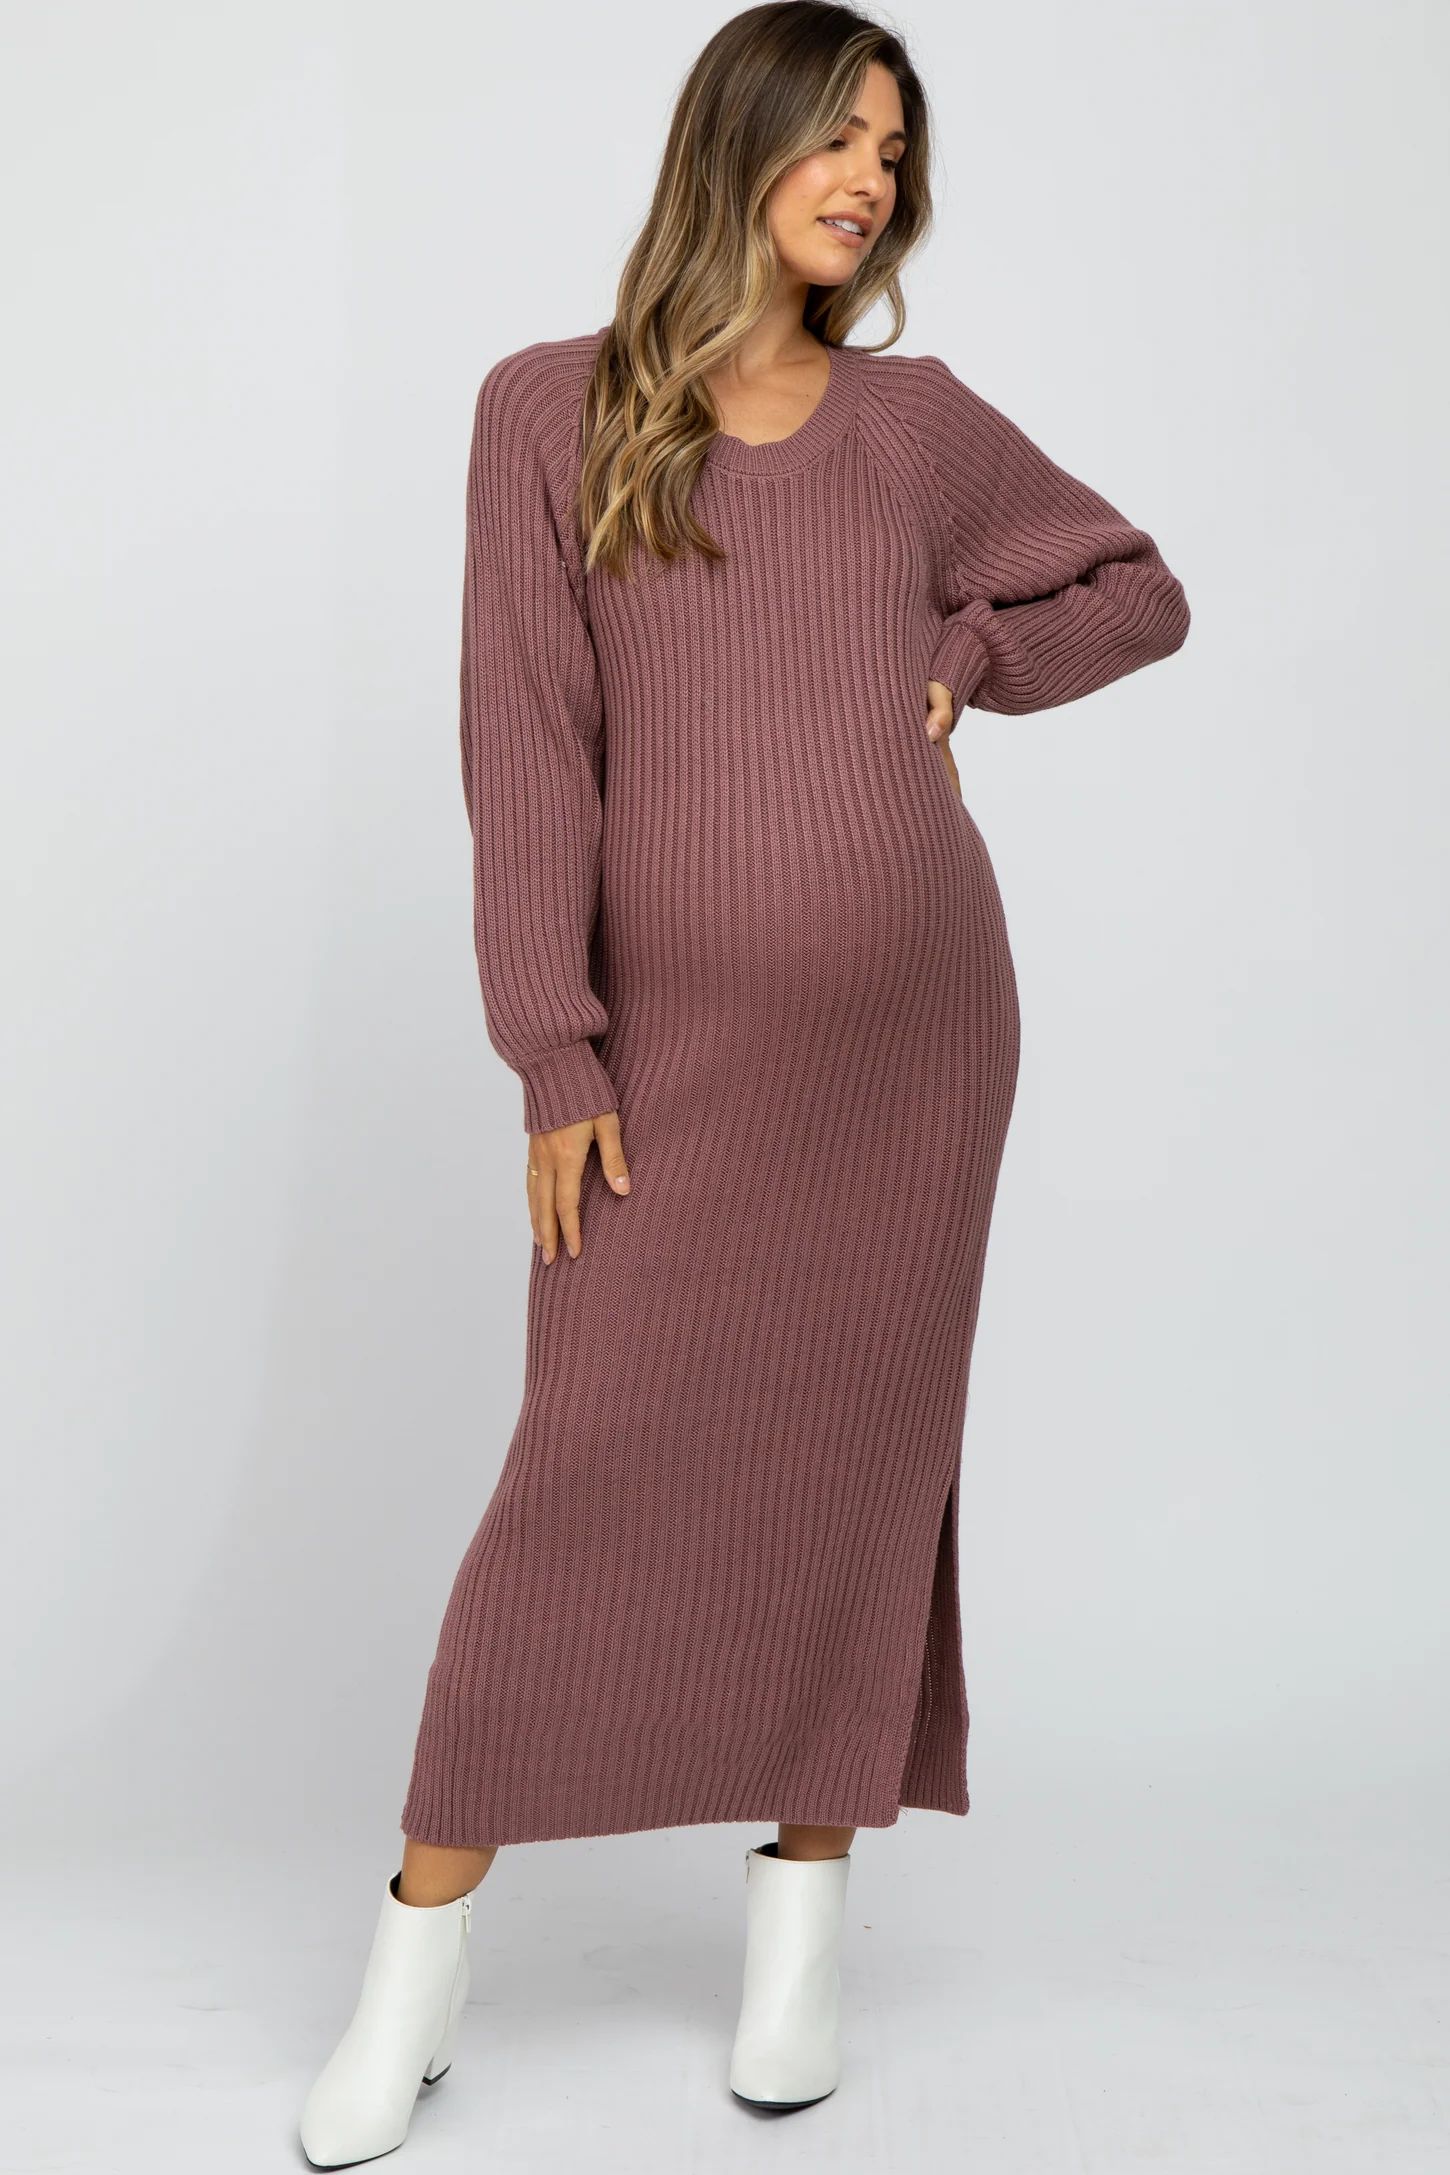 Mauve Side Slit Maternity Maxi Sweater Dress | PinkBlush Maternity